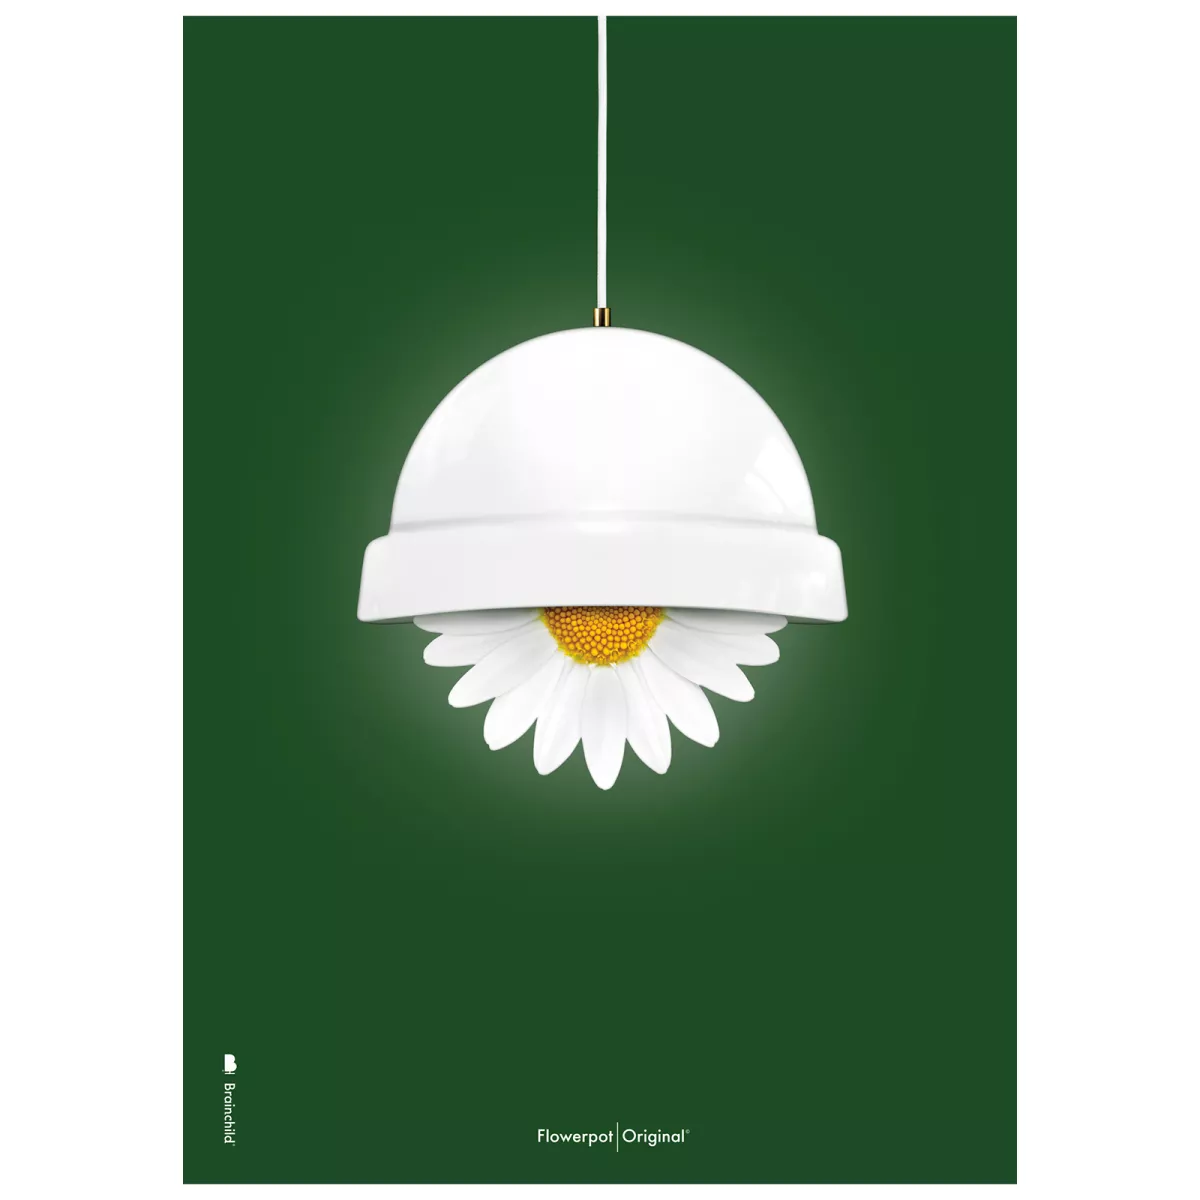 #1 - Variant: Plakat med Flowerpot - Grøn Klassisk